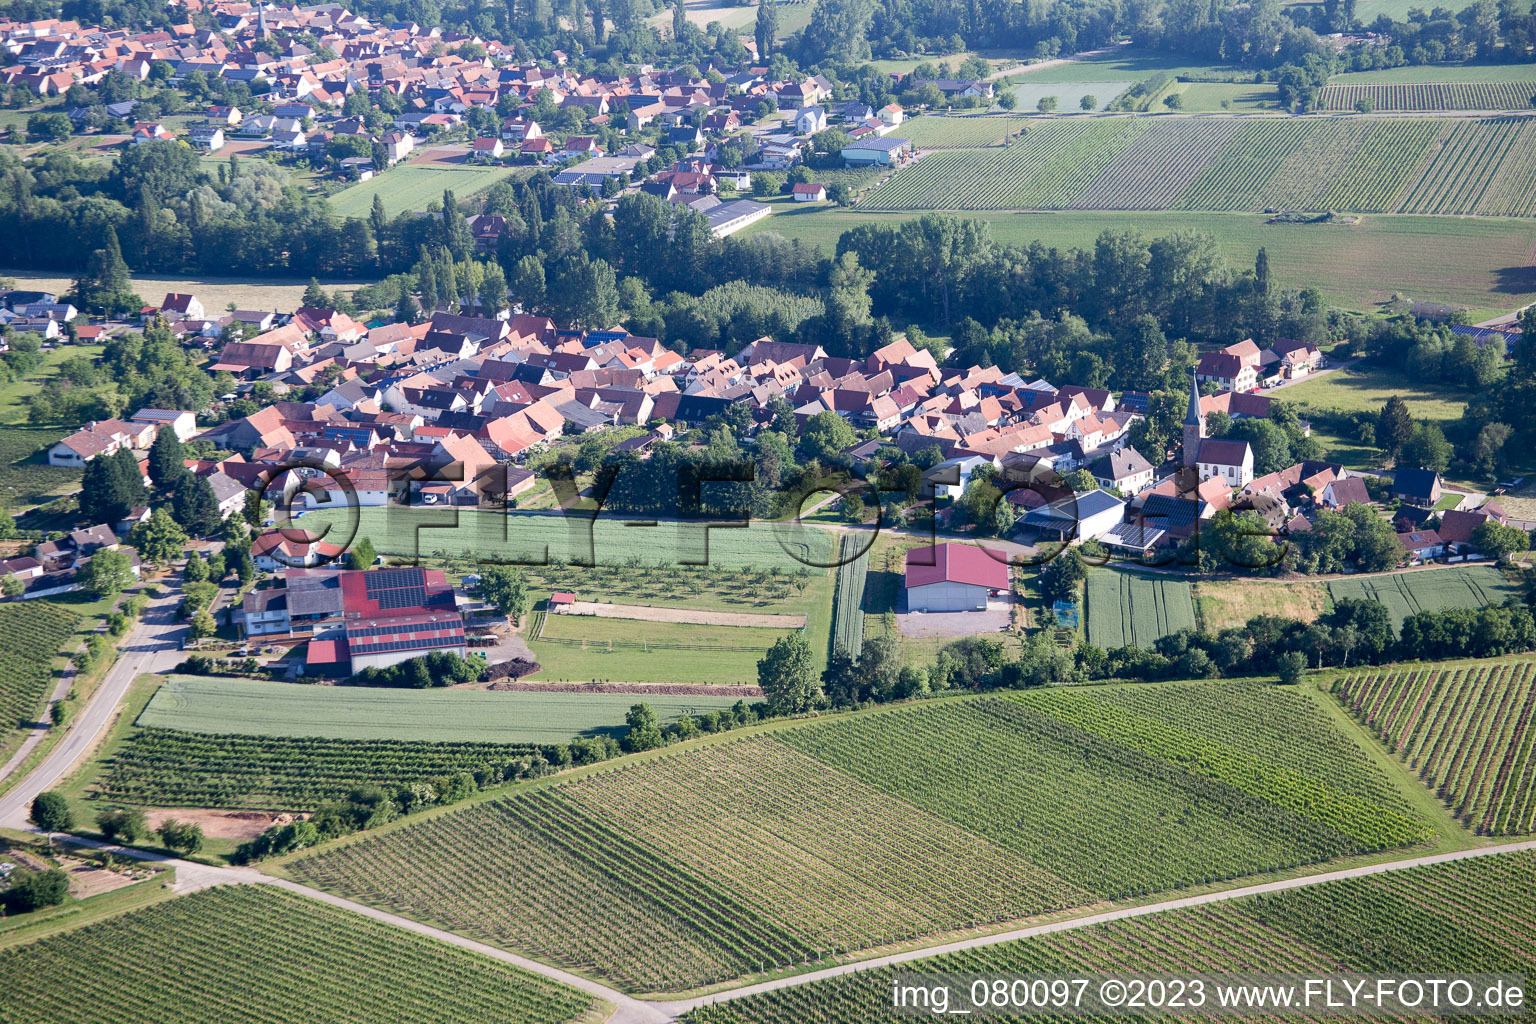 District Klingen in Heuchelheim-Klingen in the state Rhineland-Palatinate, Germany from above